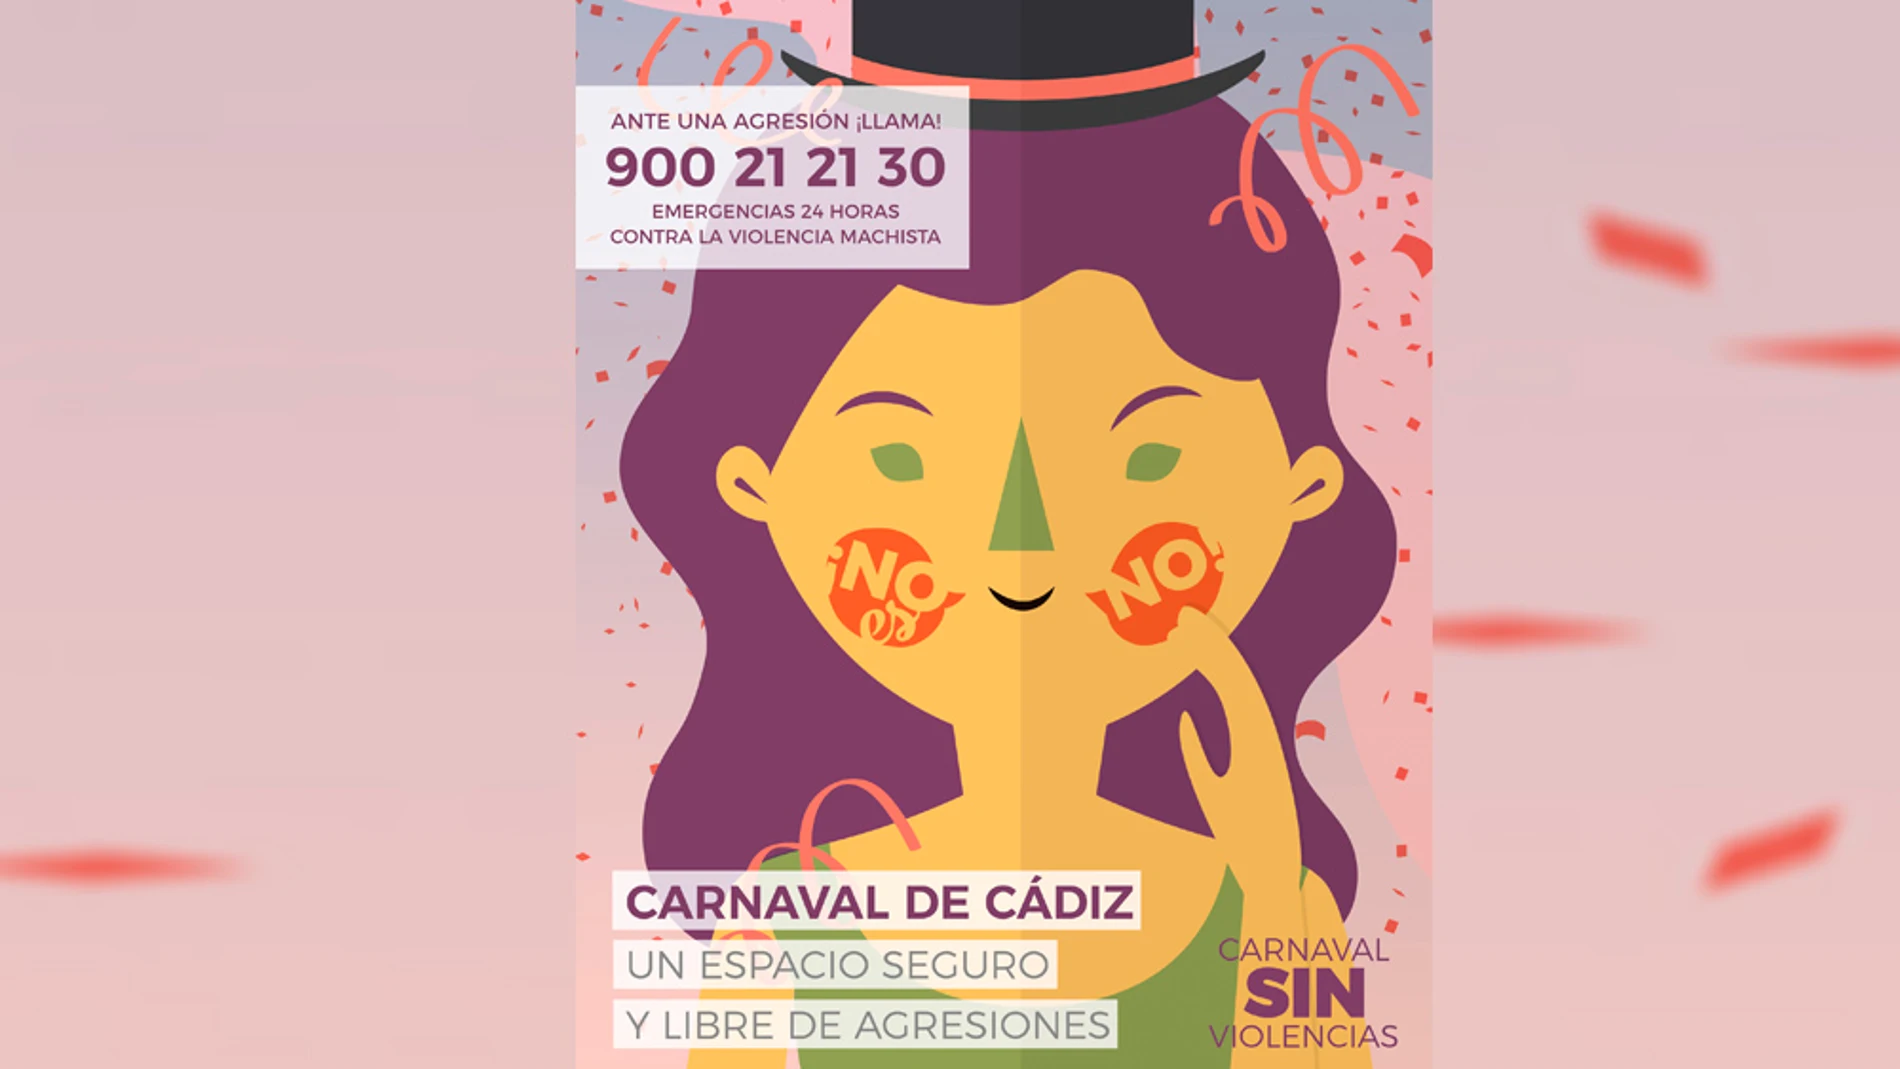 El Carnaval de Cádiz intensifica su campaña contra la violencia machista